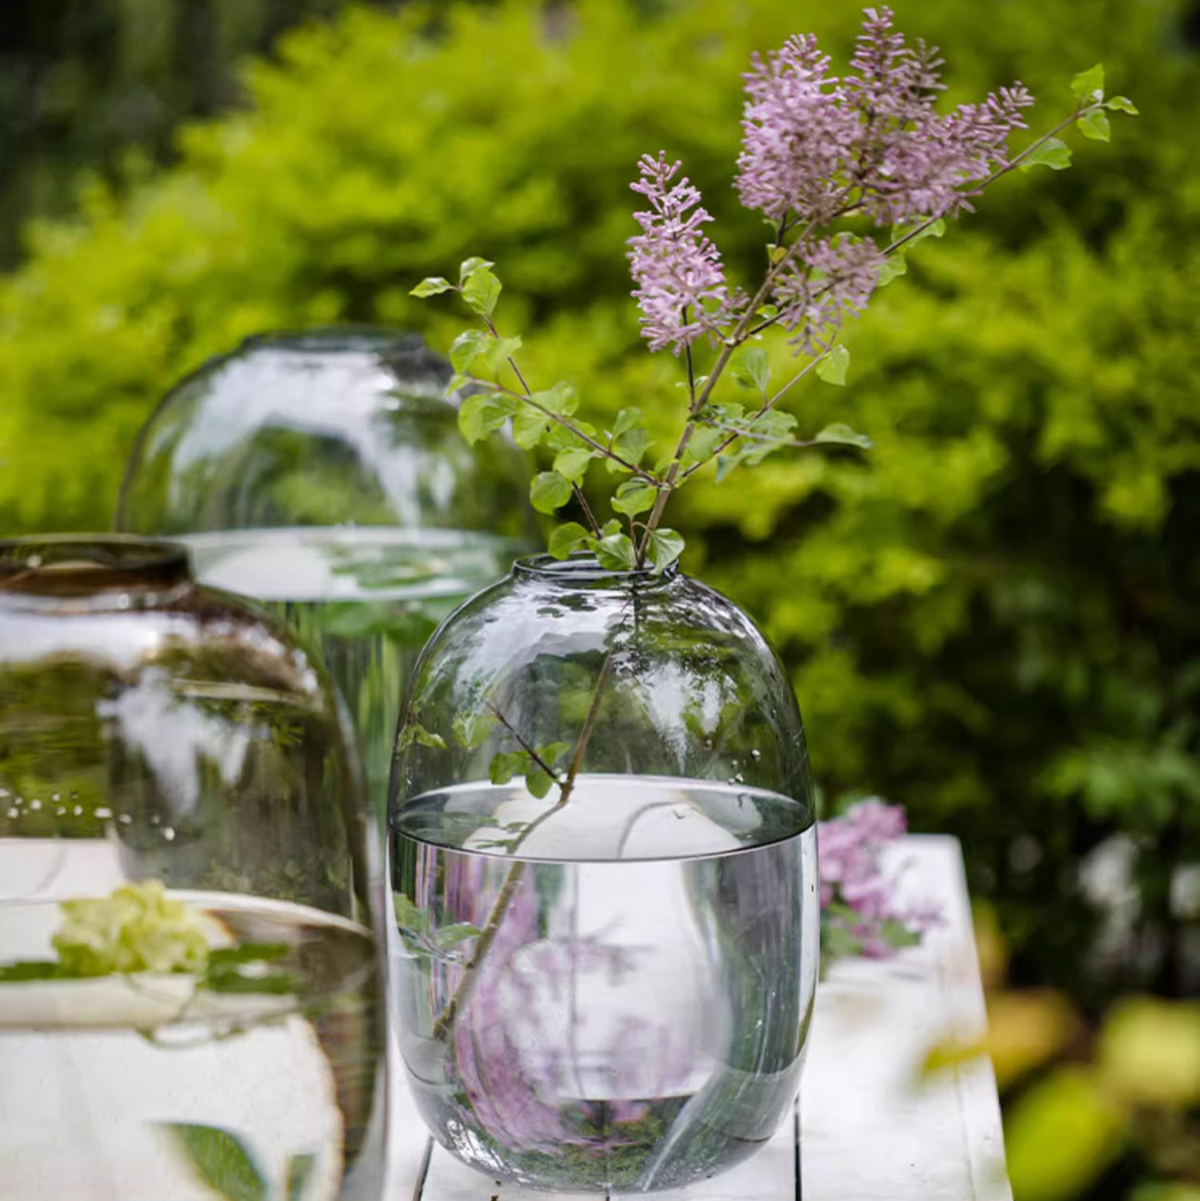 Glass Vases: Short Glass Vessels & Long Glass Vases